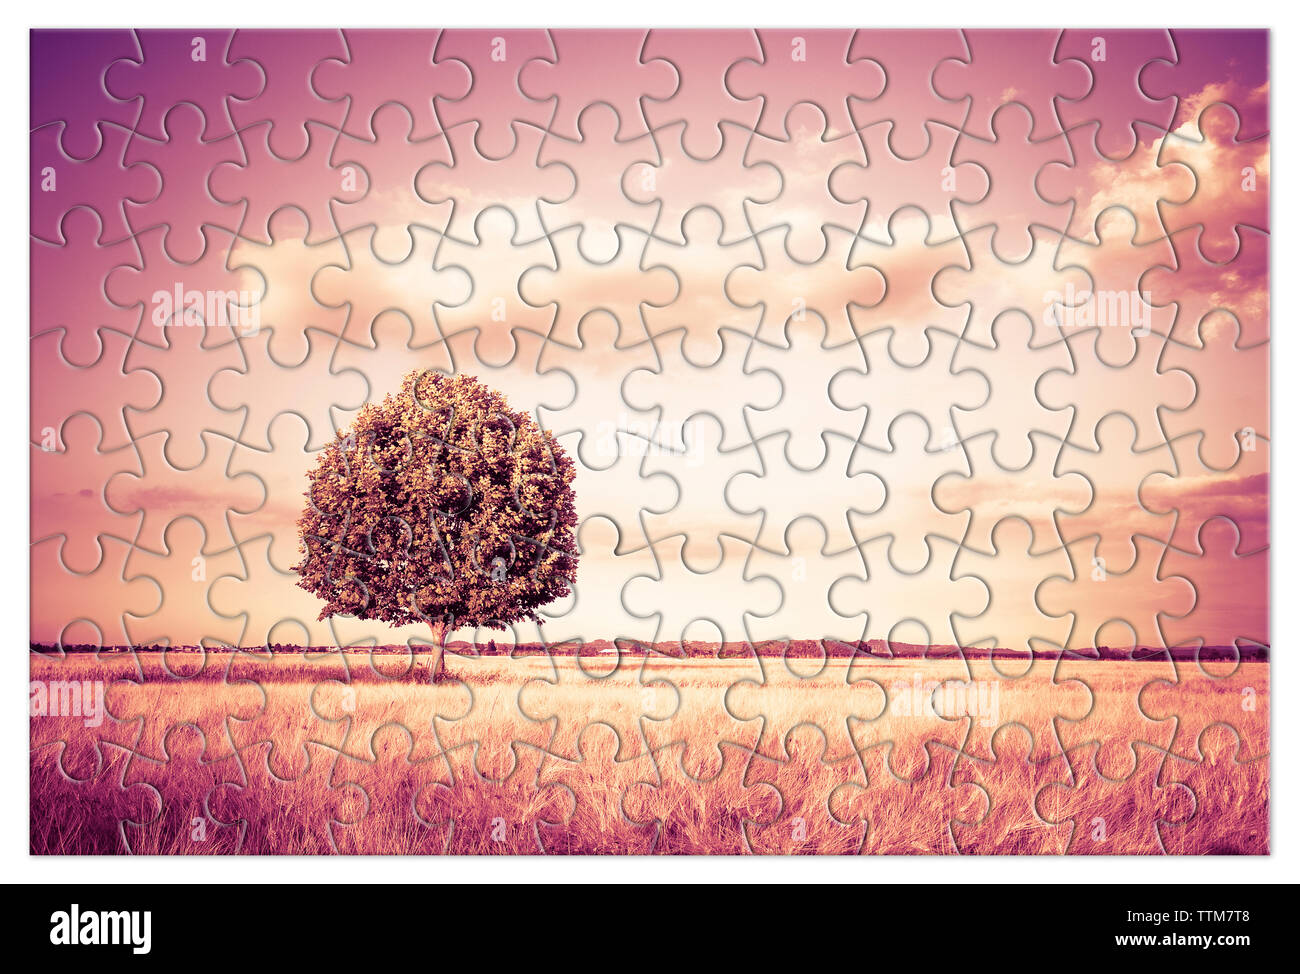 Isolierte Baum in einem Toskana wheatfield in Form von Puzzle - (Toskana - Italien-getonten Bild) Stockfoto